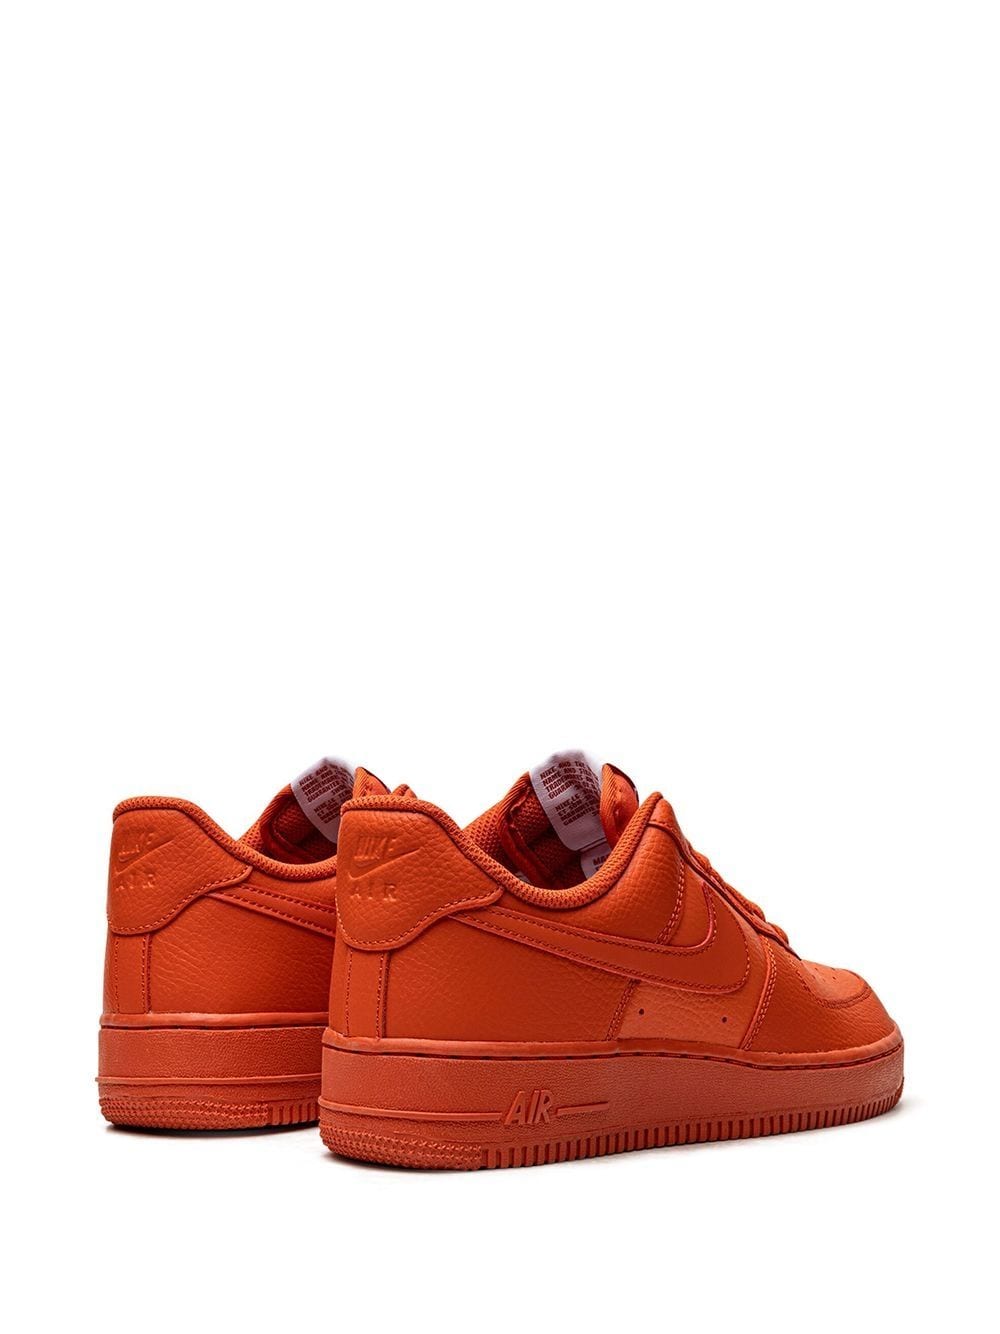 Shop Nike Air Force 1 '07 "triple Orange" Sneakers